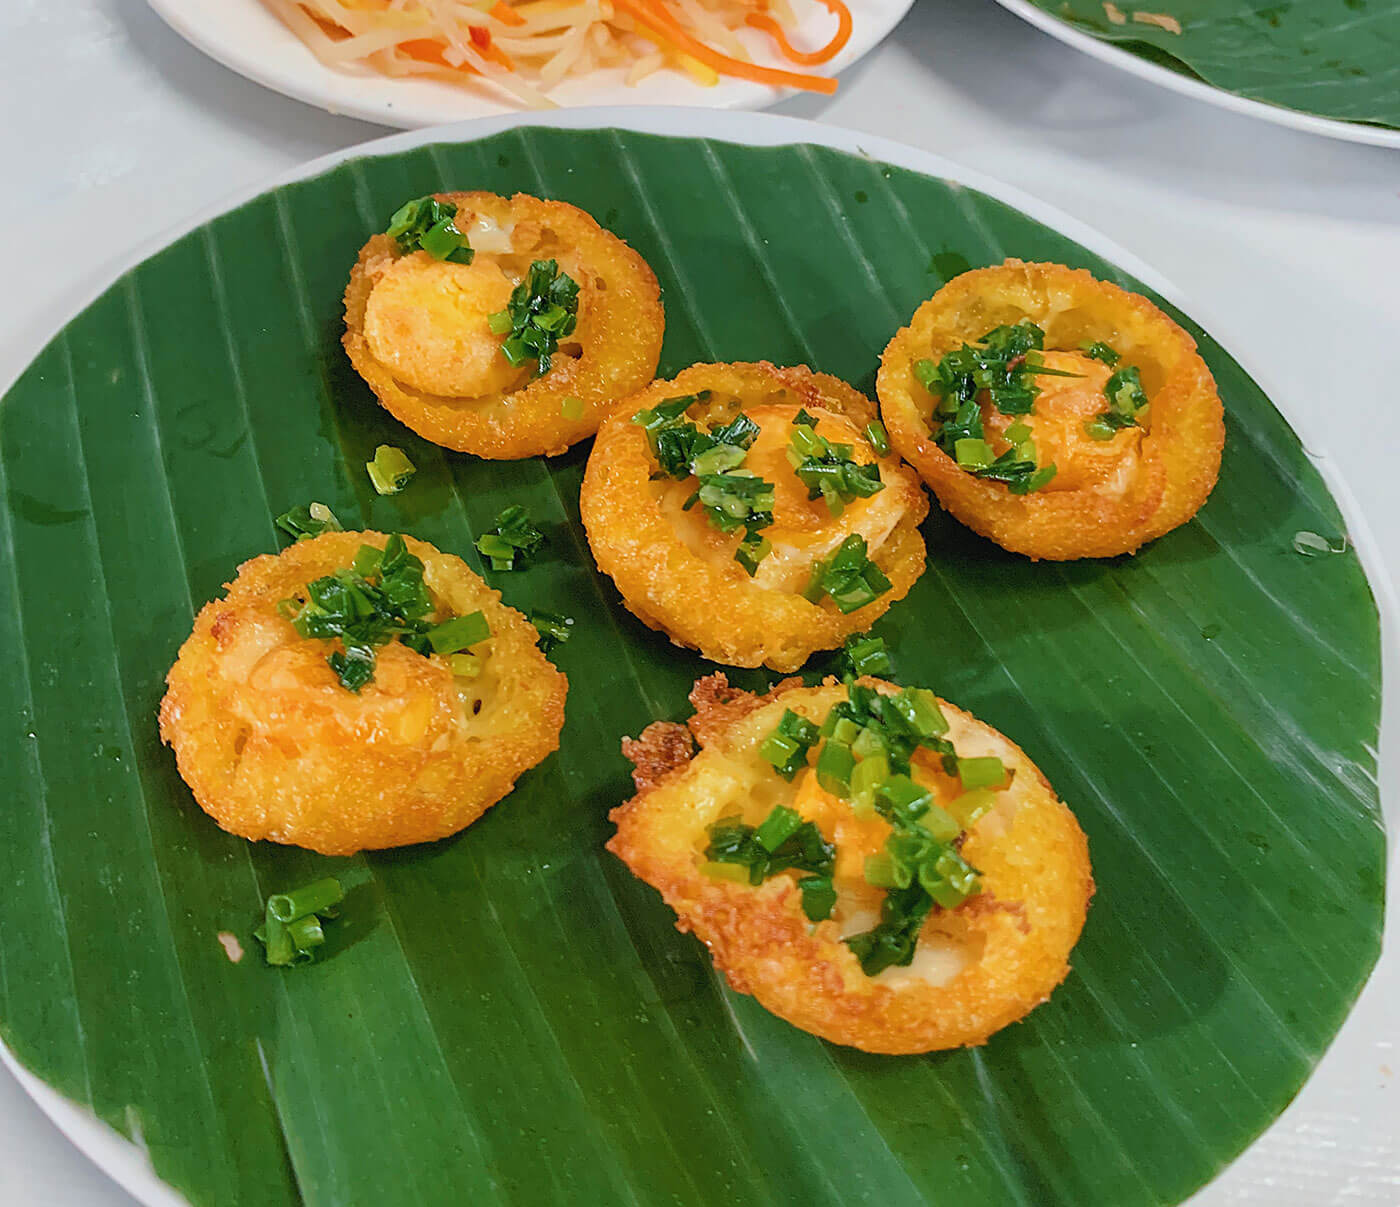 Banh Khot - Hoi An Food